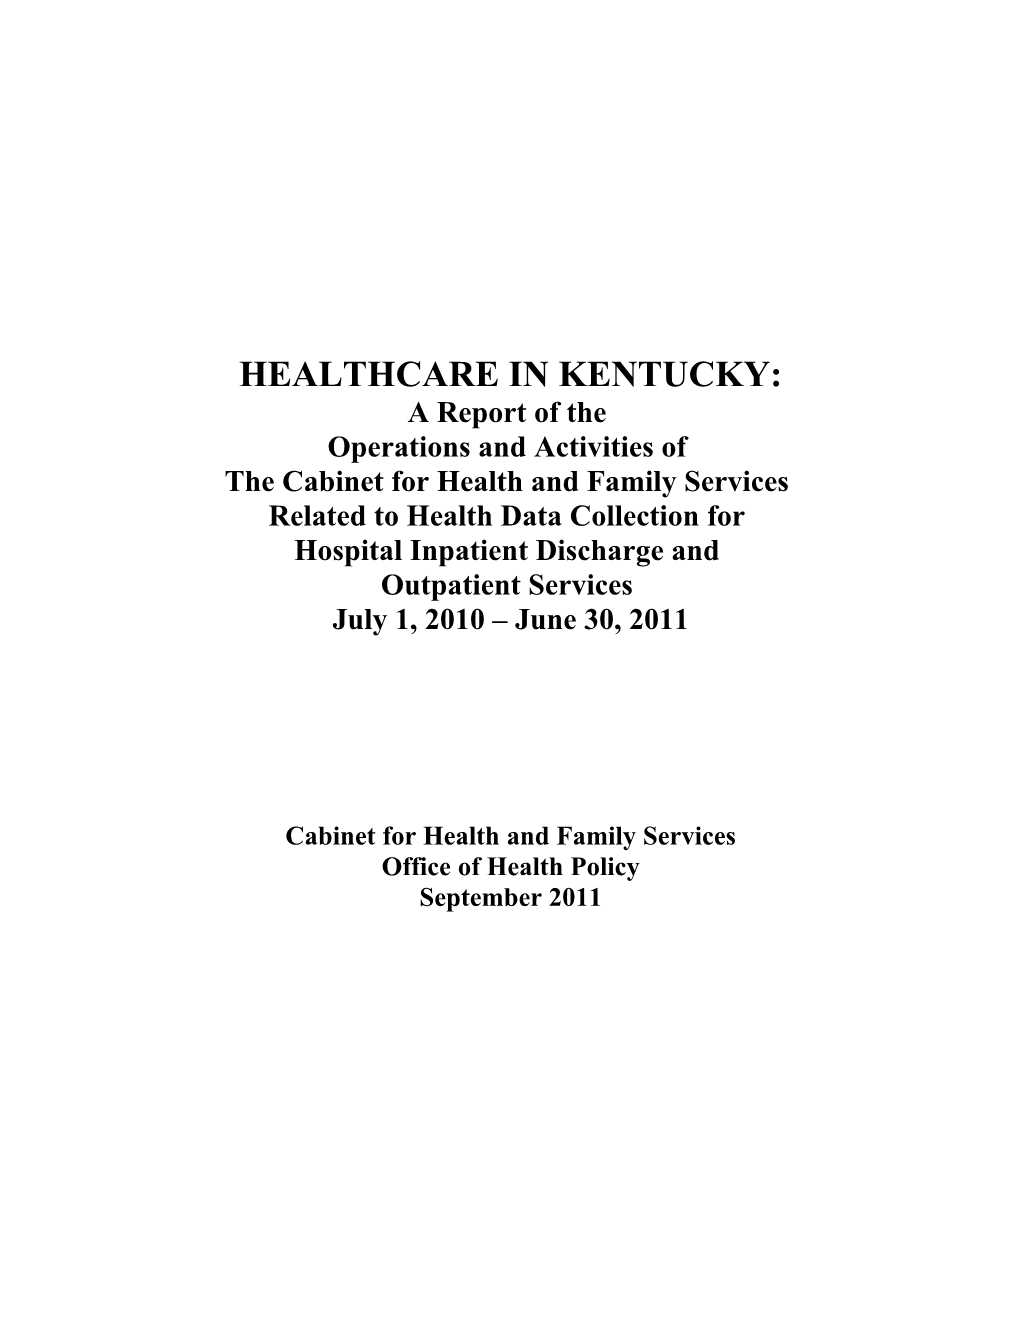 Healthcare in Kentucky